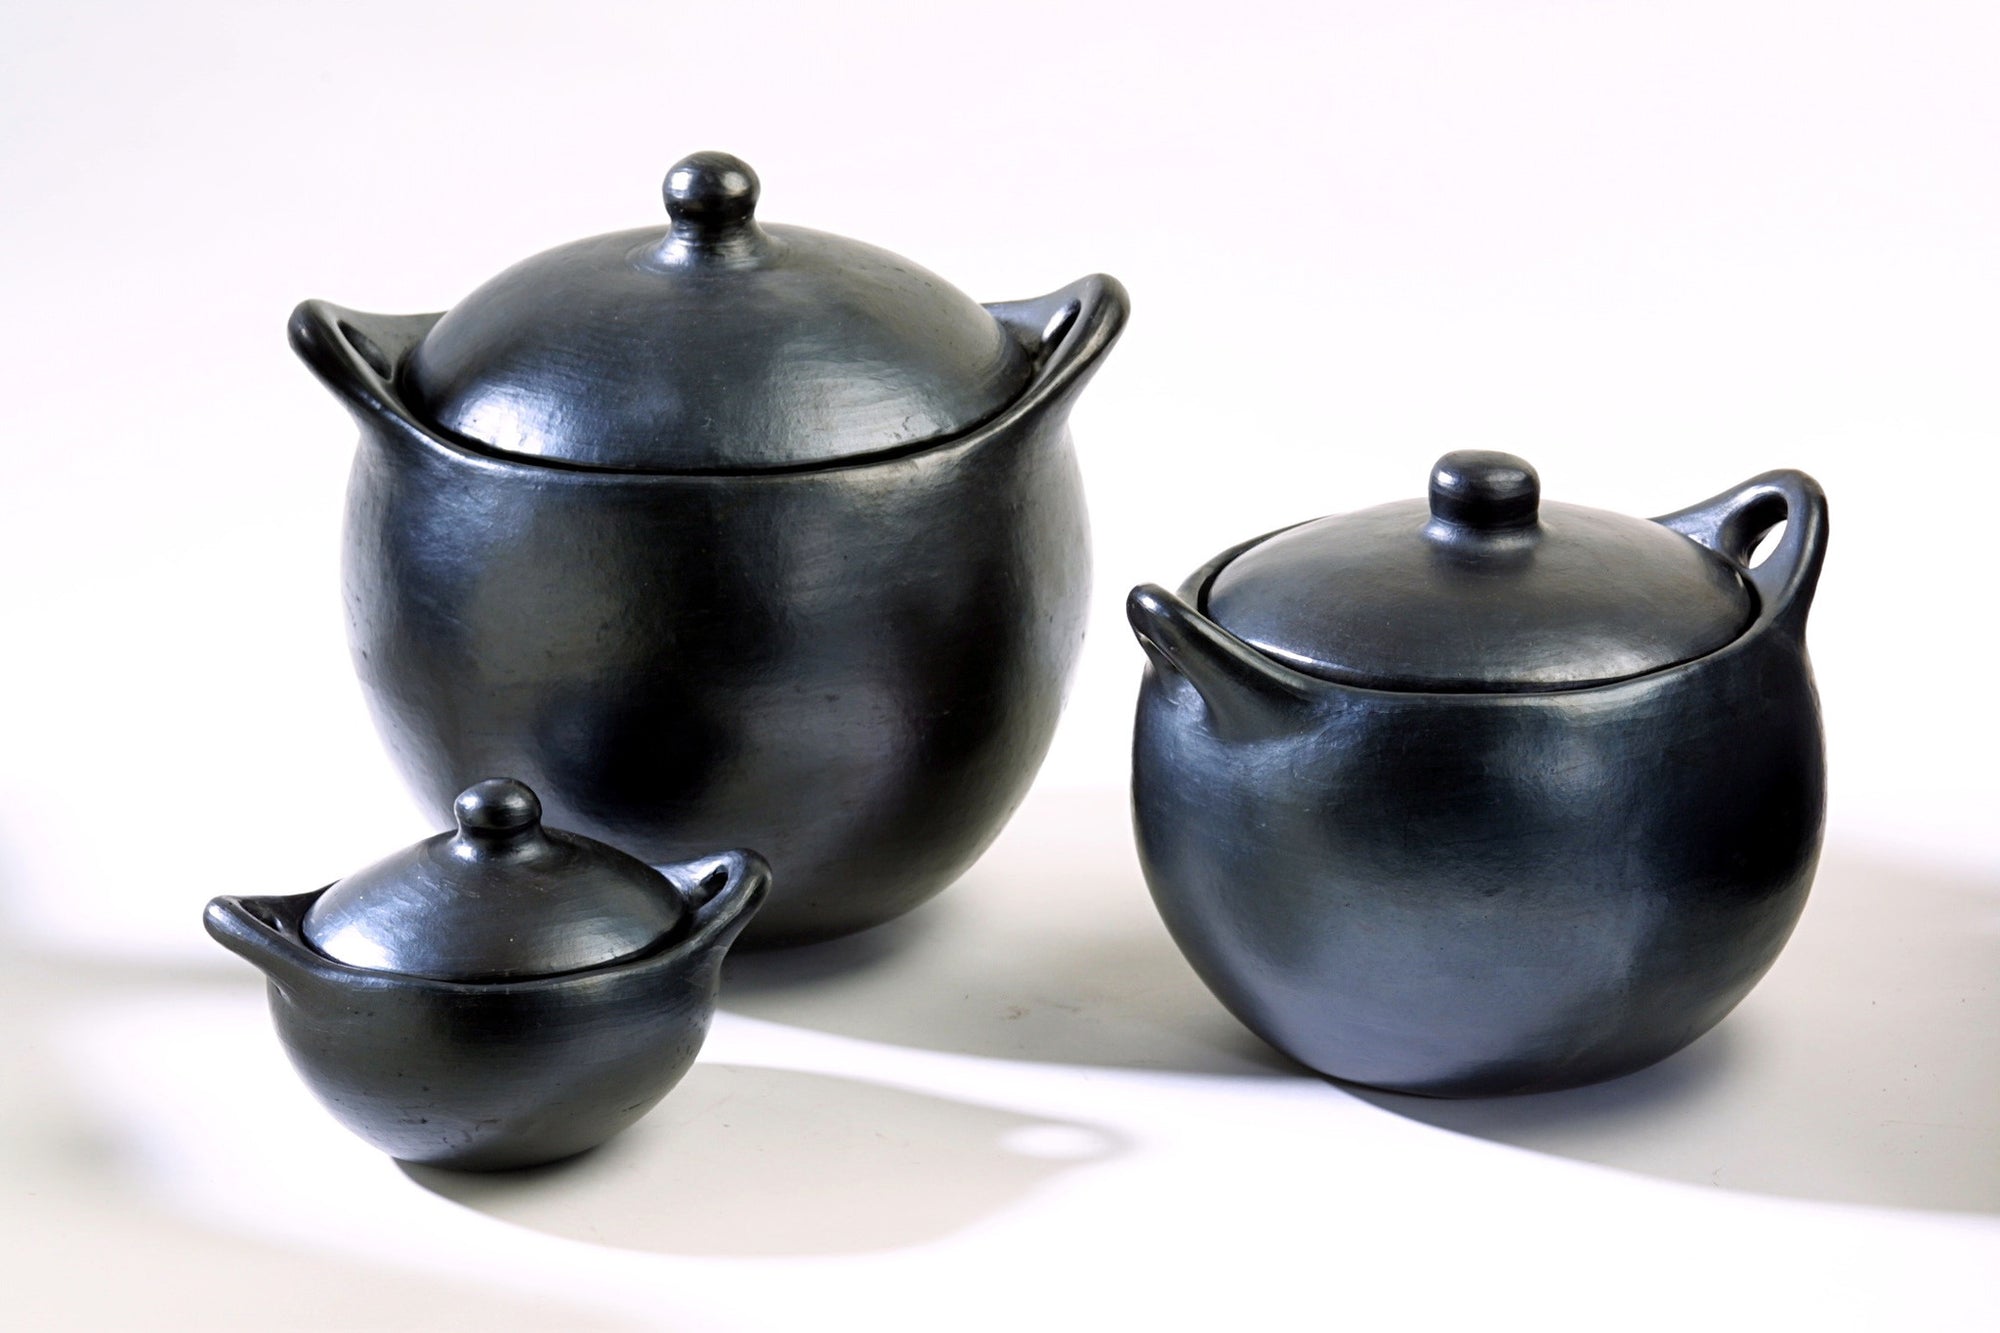 Chamba Soup Pots (SS0-SS15) - MyToque - 1